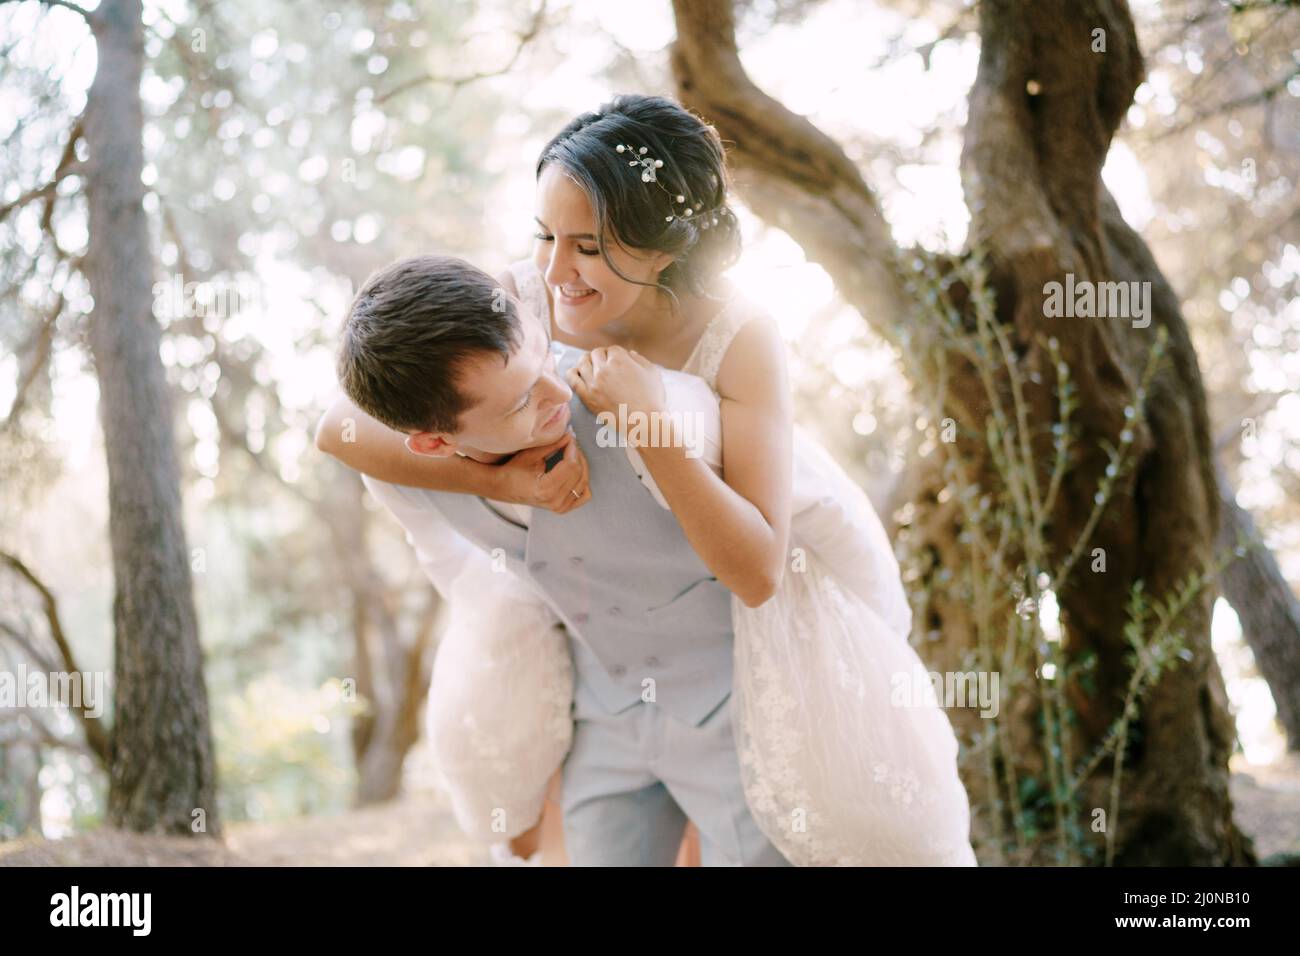 La mariée a sauté sur le dos du marié.La mariée et le marié s'amusent parmi les arbres de l'oliveraie Banque D'Images